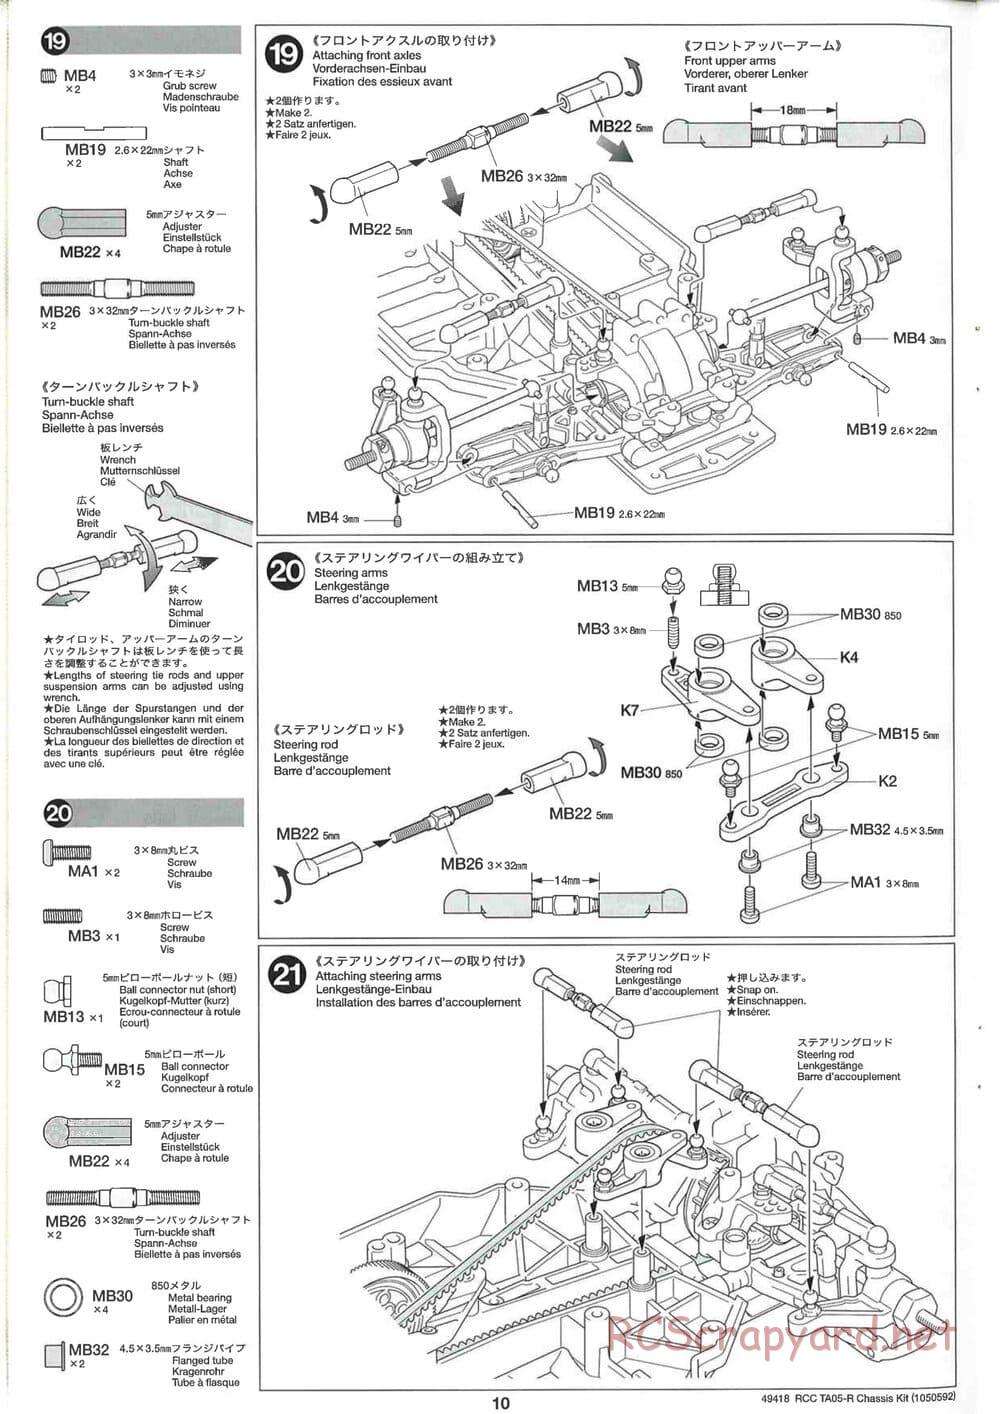 Tamiya - TA05-R Chassis - Manual - Page 10